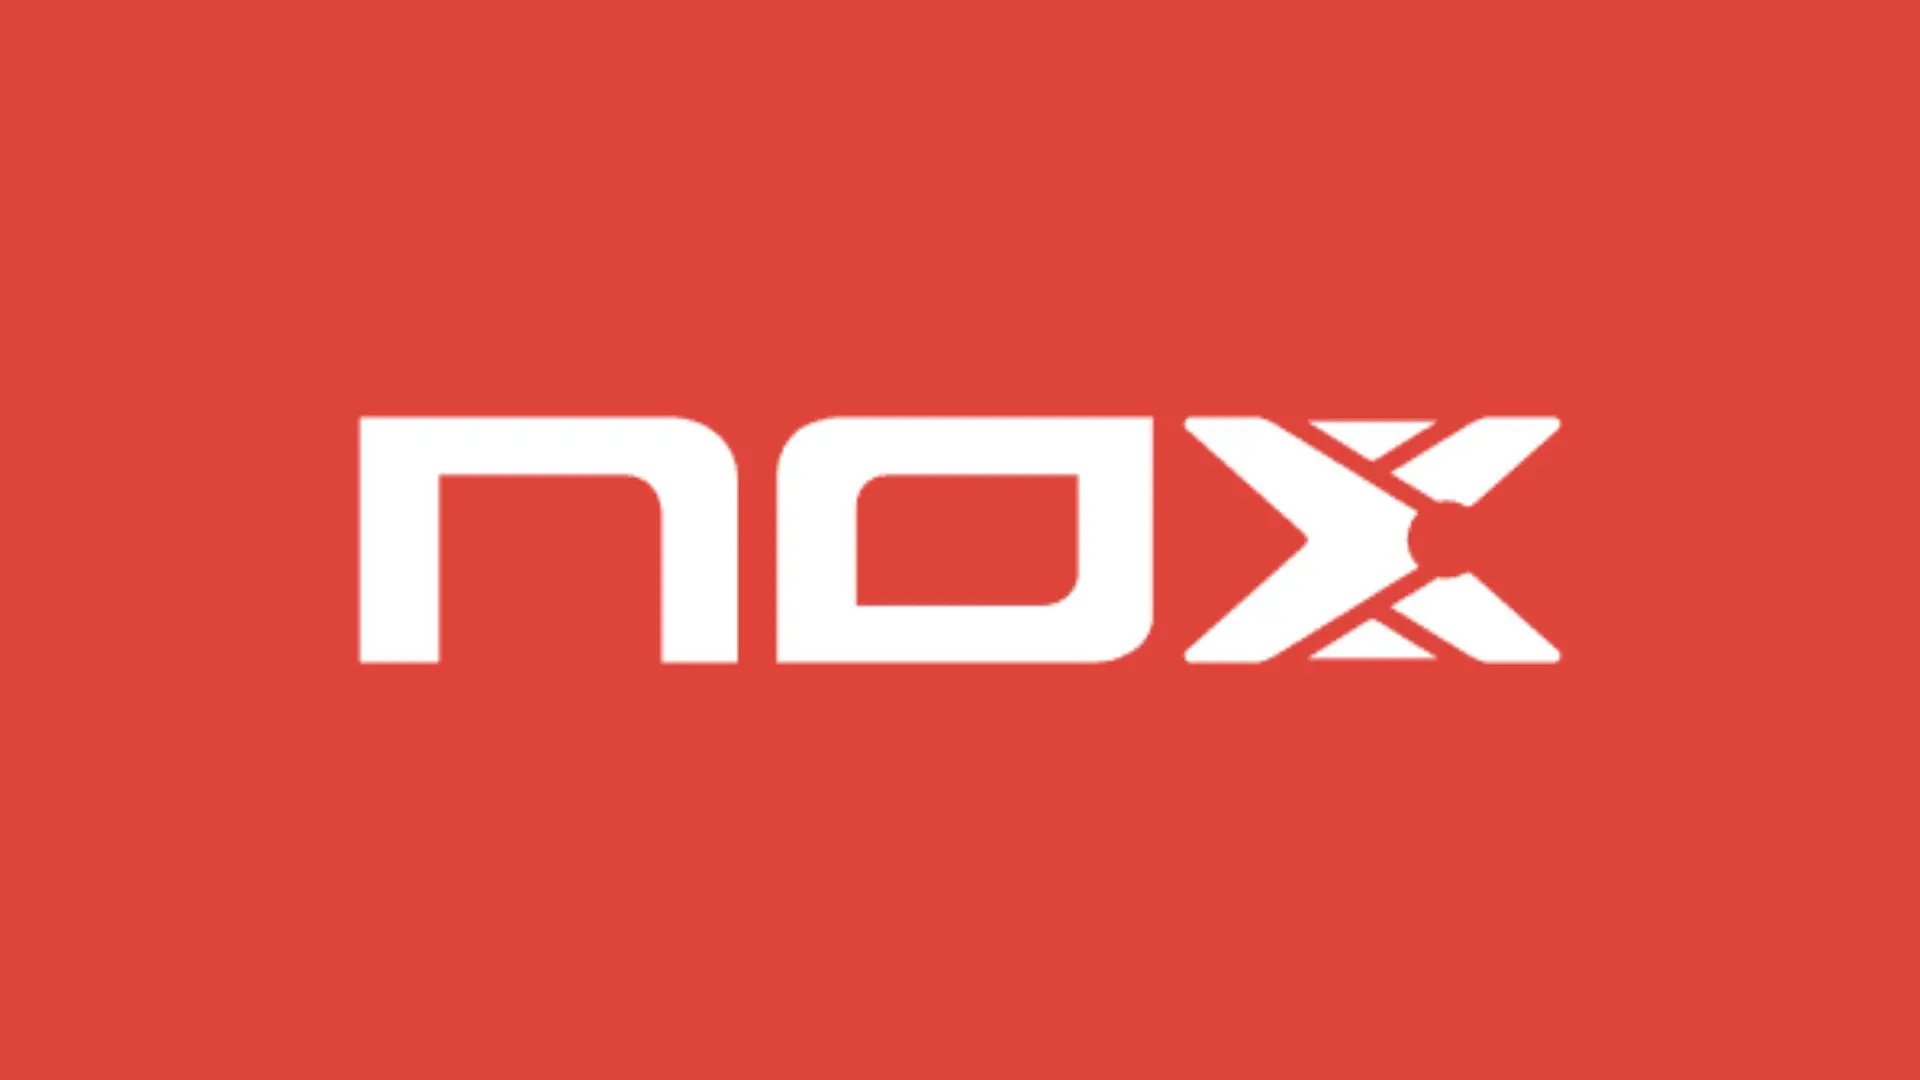 Nox padel : ¿Qué pala usar dependiendo de la temperatura?